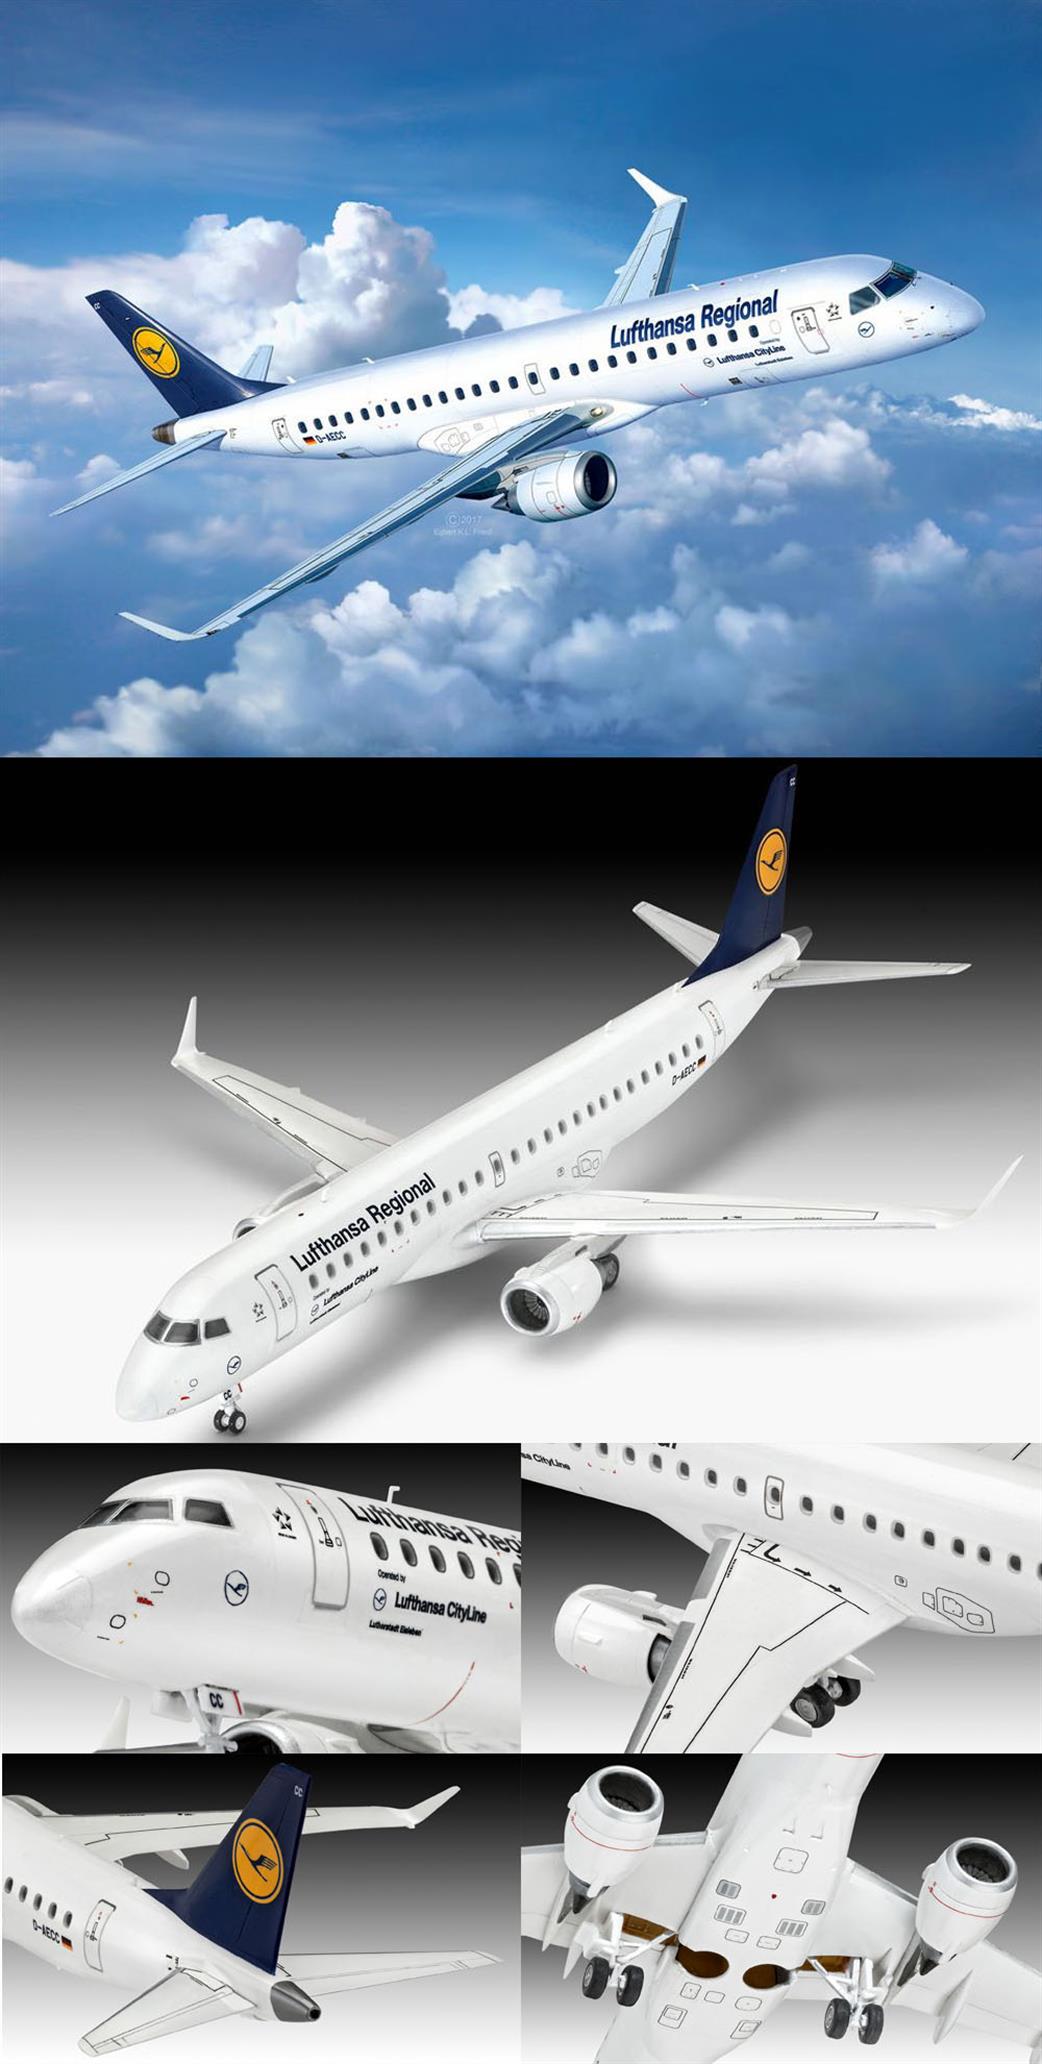 Revell 1/144 63937 Embraer 190 'Lufthansa' model set